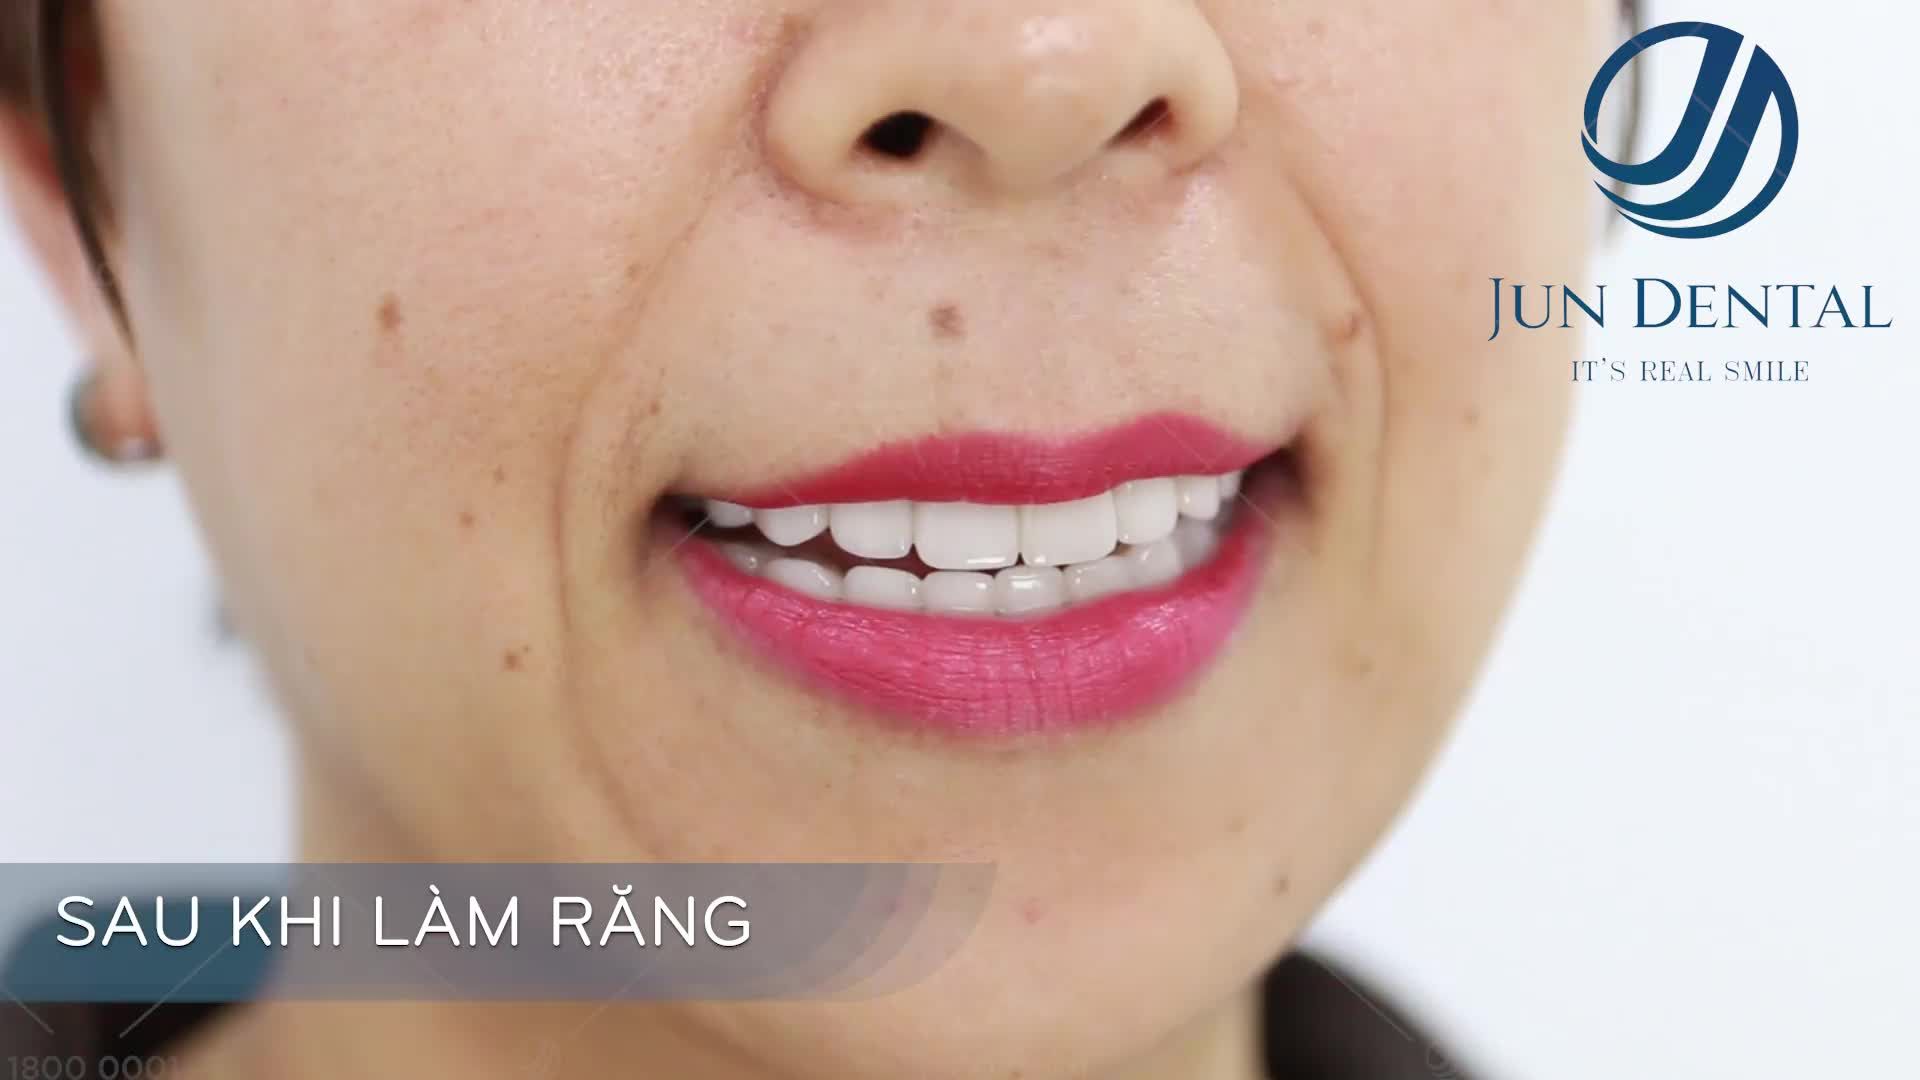 Hình ảnh chị Thu Hòa trước và sau khi làm răng sứ thẩm mỹ tại Jun_Dental bảo tồn răng gốc và vẫn đảm bảo ăn nhai như khi chưa làm răng.